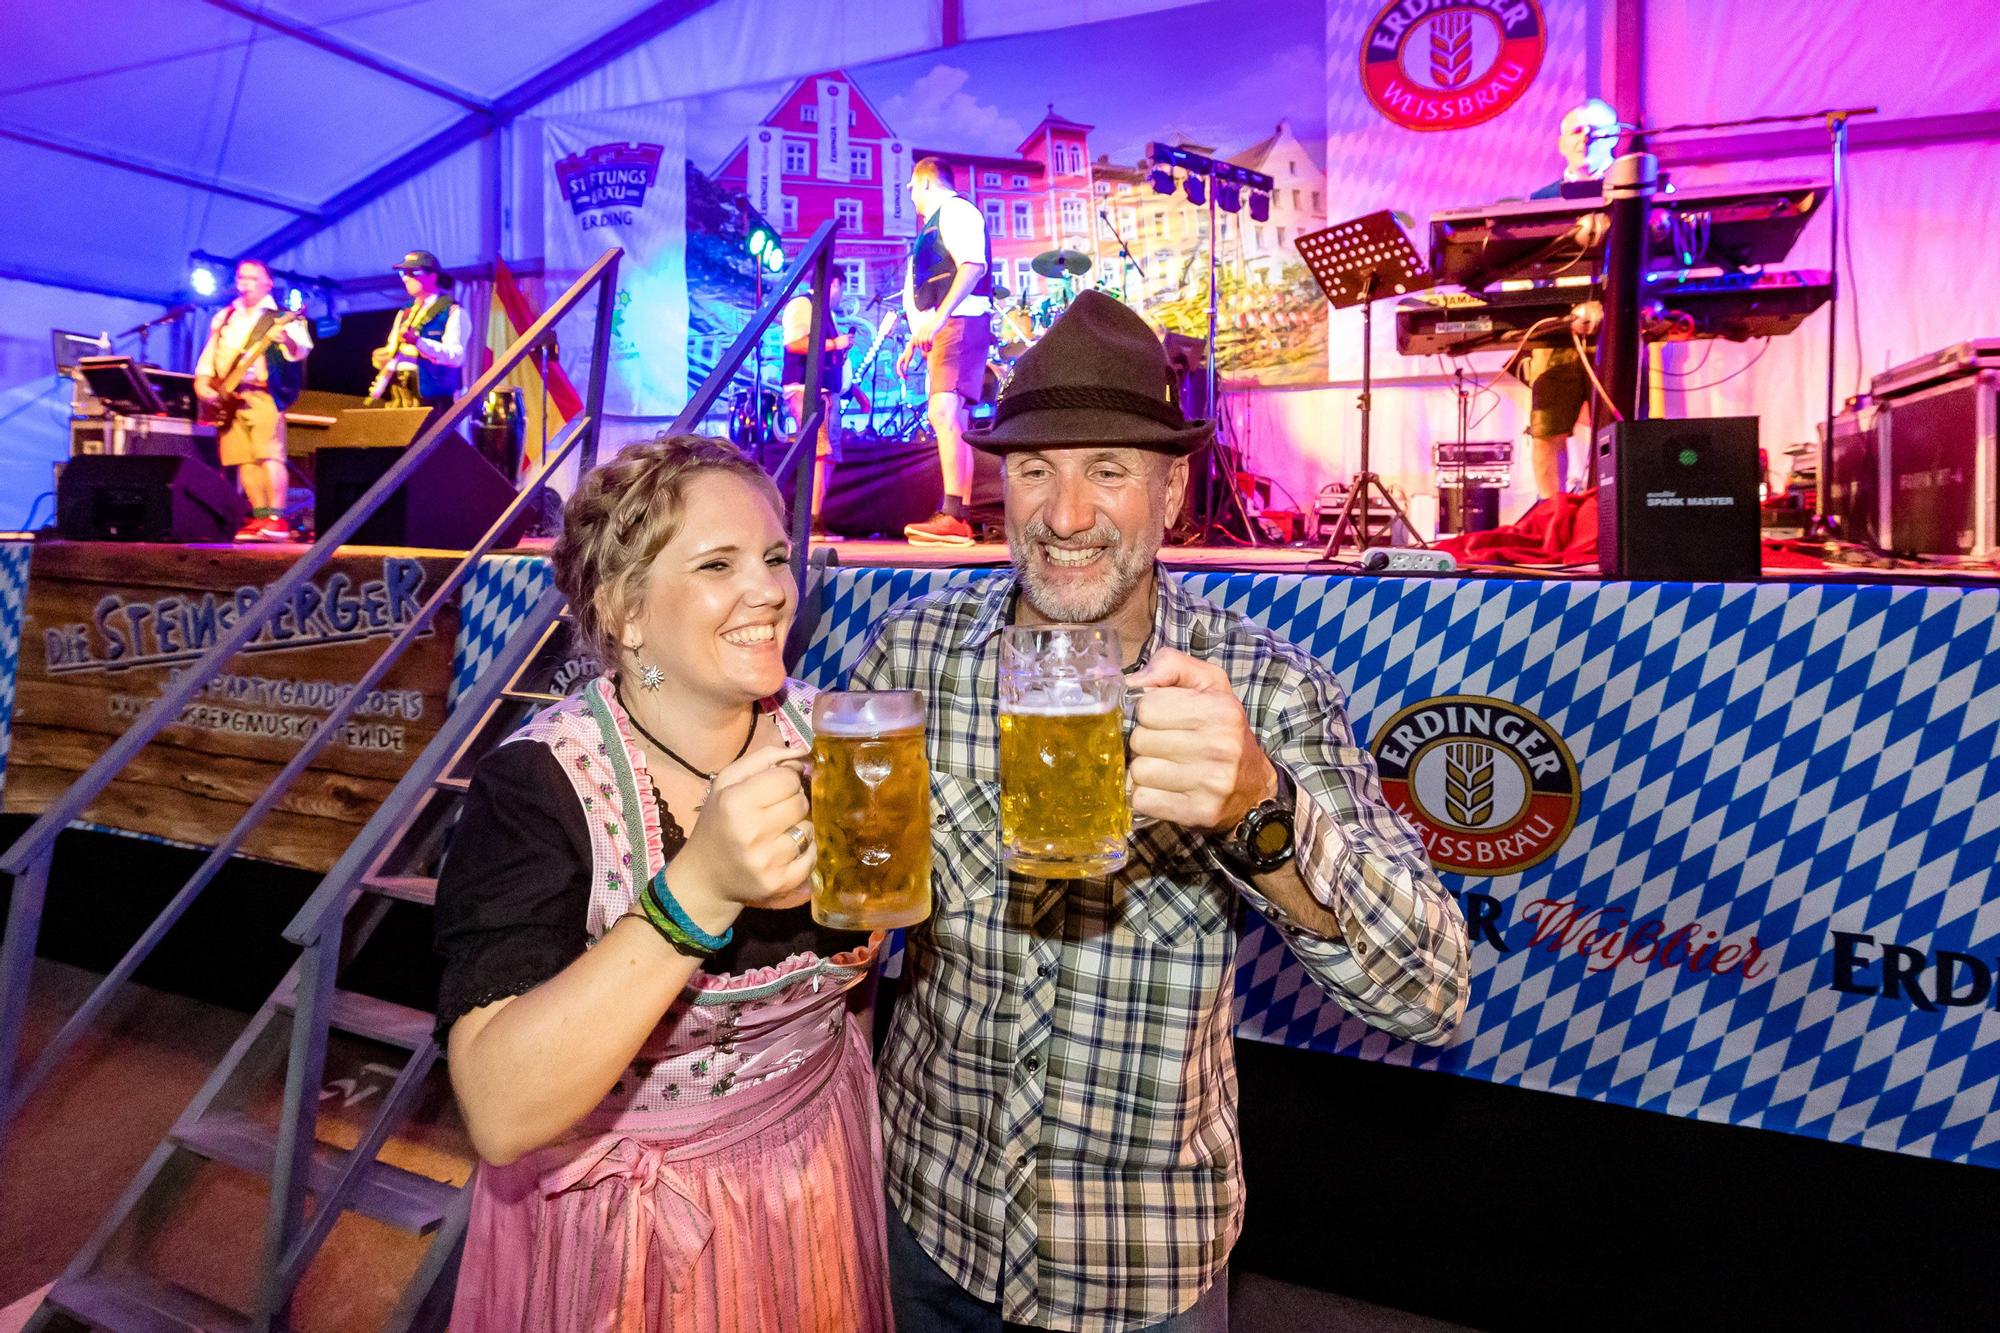 La “apertura del barril” marca el inicio de la Oktoberfest. La “Fiesta de la Cerveza” se desarrollará hasta el 16 de octubre